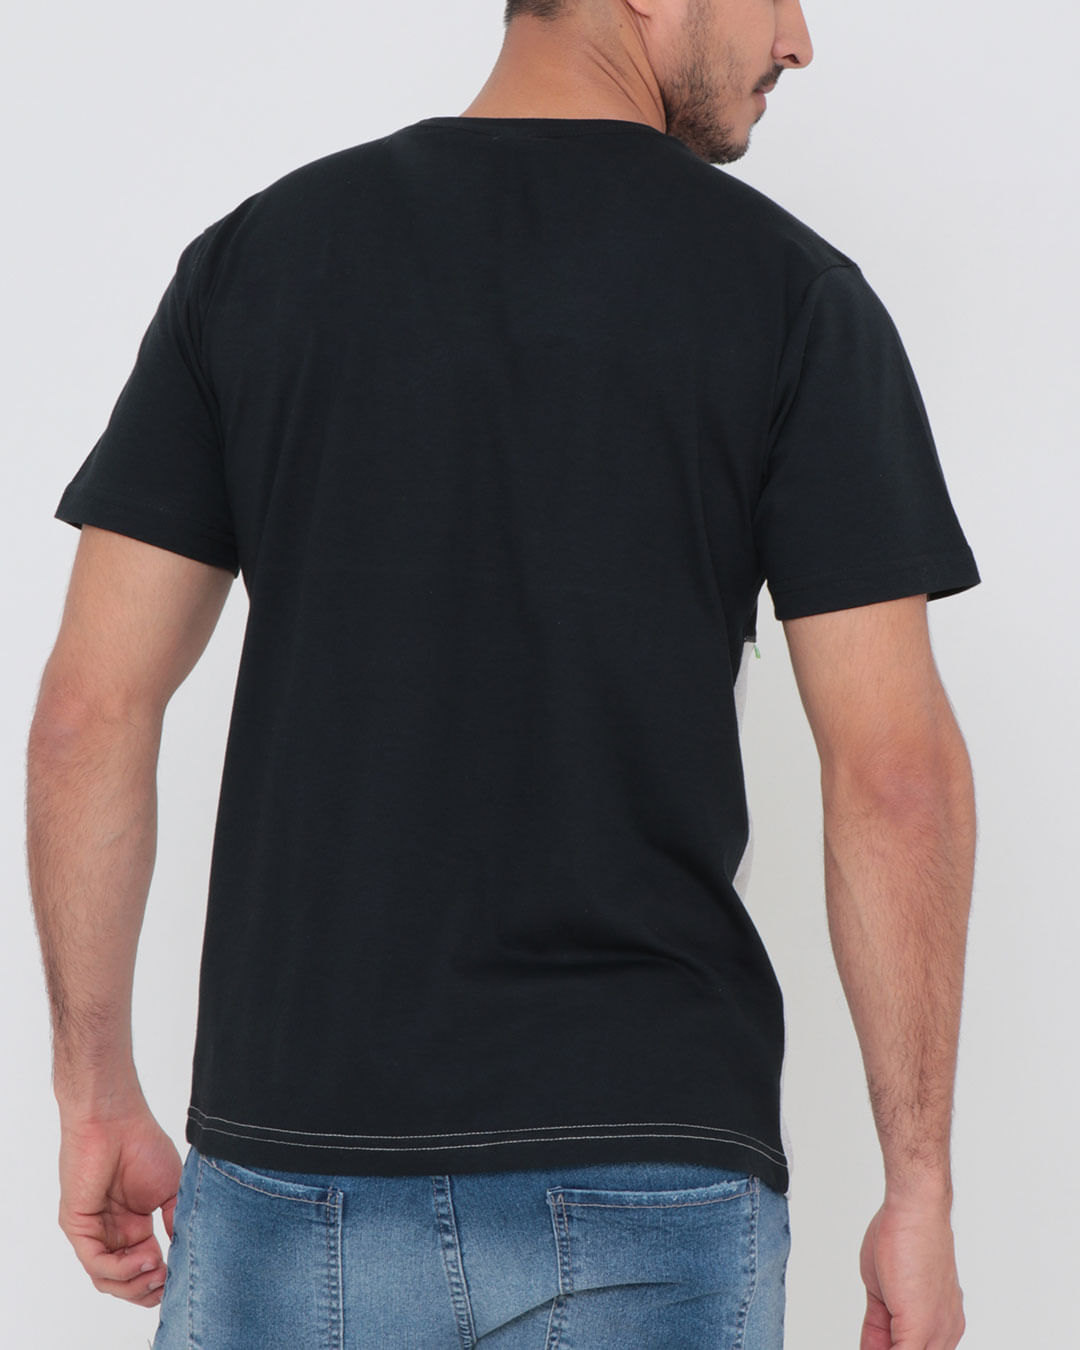 Camiseta-Estampa-Overcore-Com-Tela-Preta